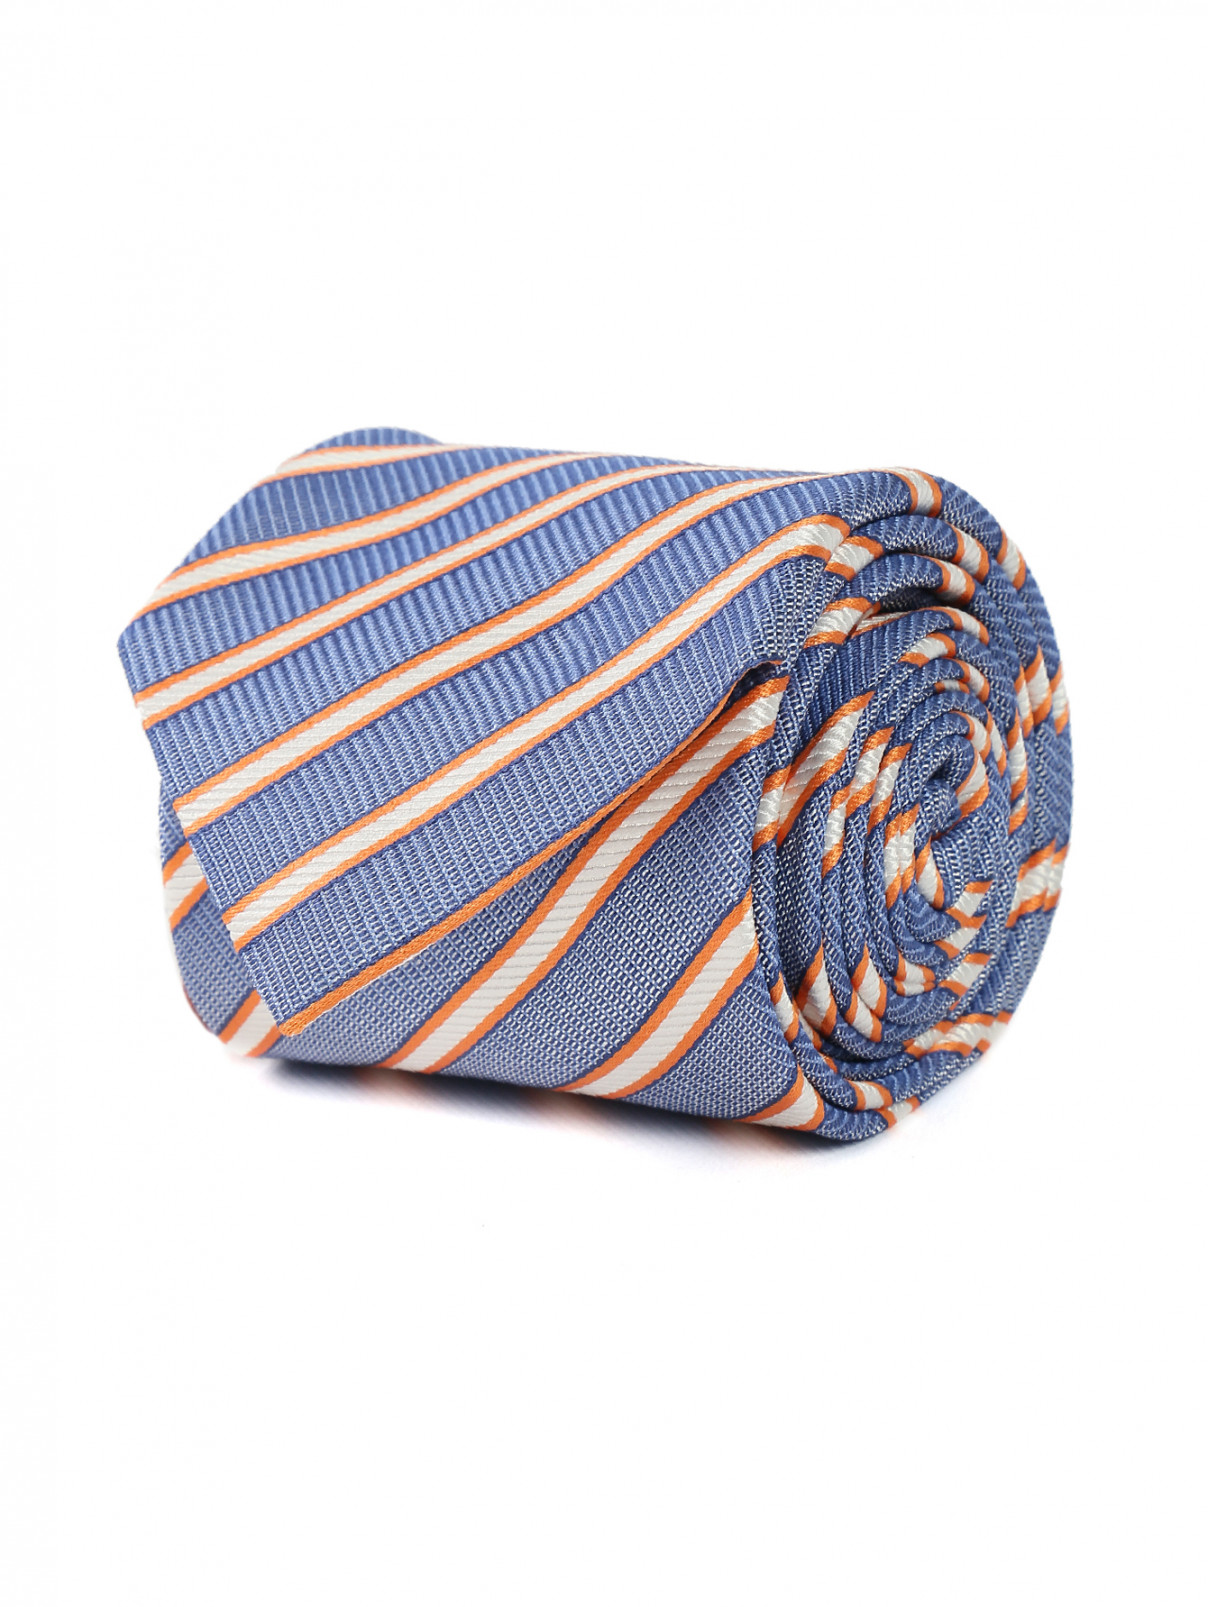 Галстук из шелка с узором полоска Pal Zileri  –  Общий вид  – Цвет:  Синий